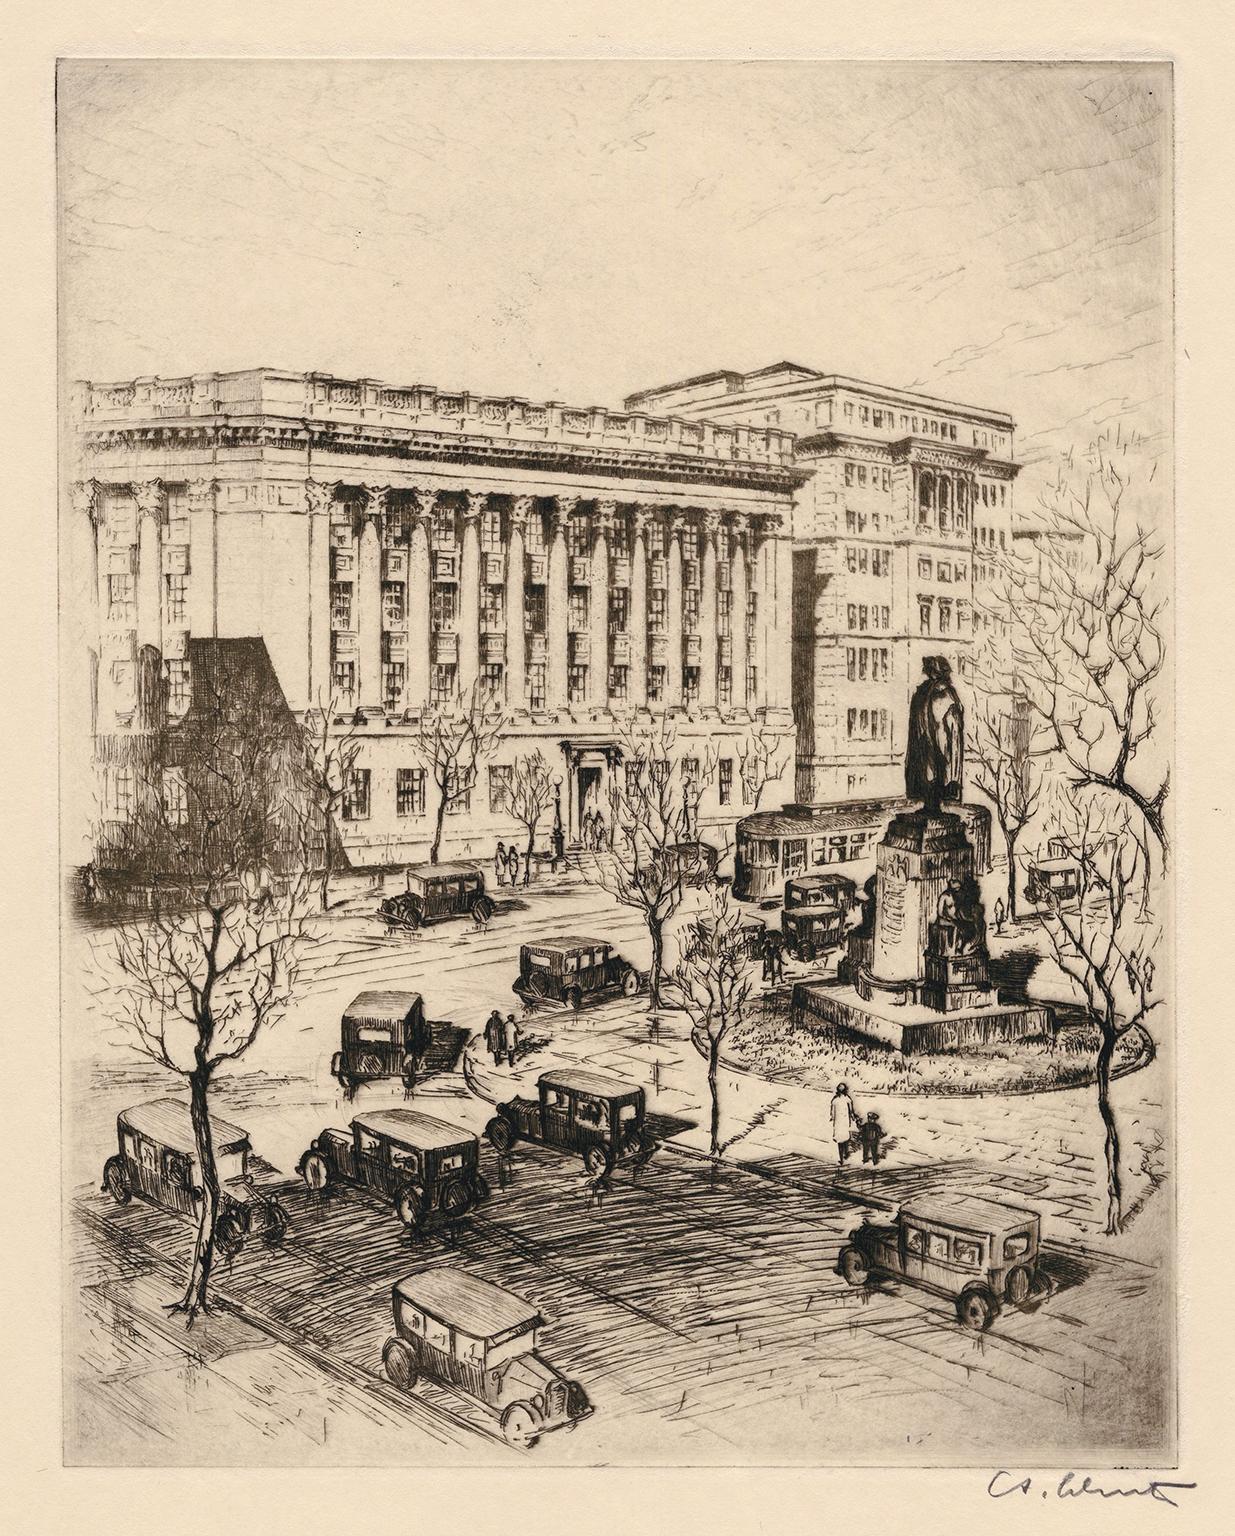 Anton Schutz Landscape Print – U.S. Handelskammer" - Realismus der 1920er Jahre, Washington D.C.